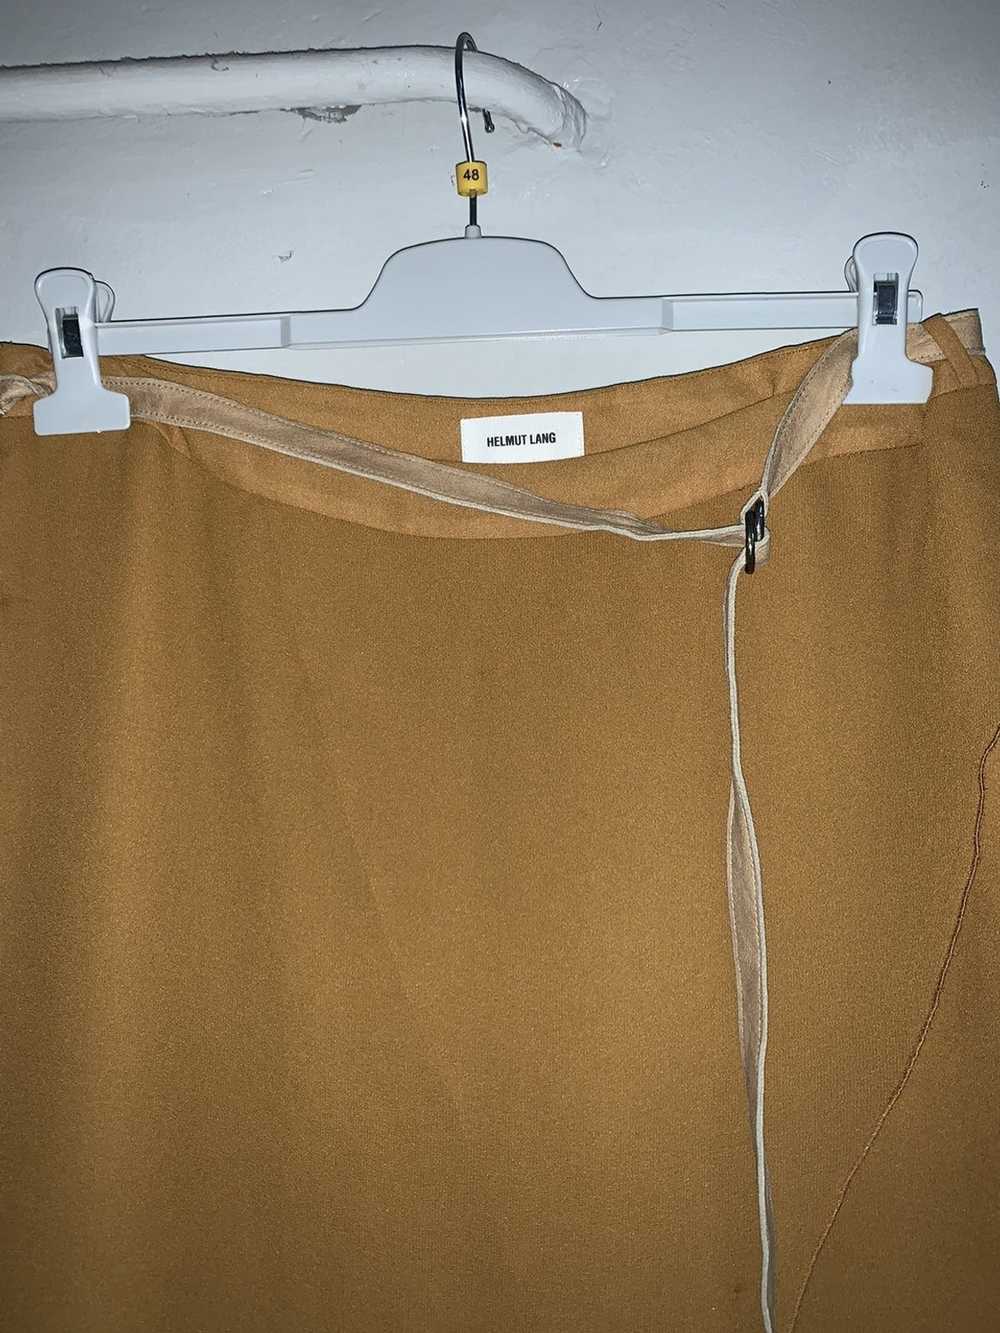 Helmut Lang Helmut Lang leather belt skirt - image 2